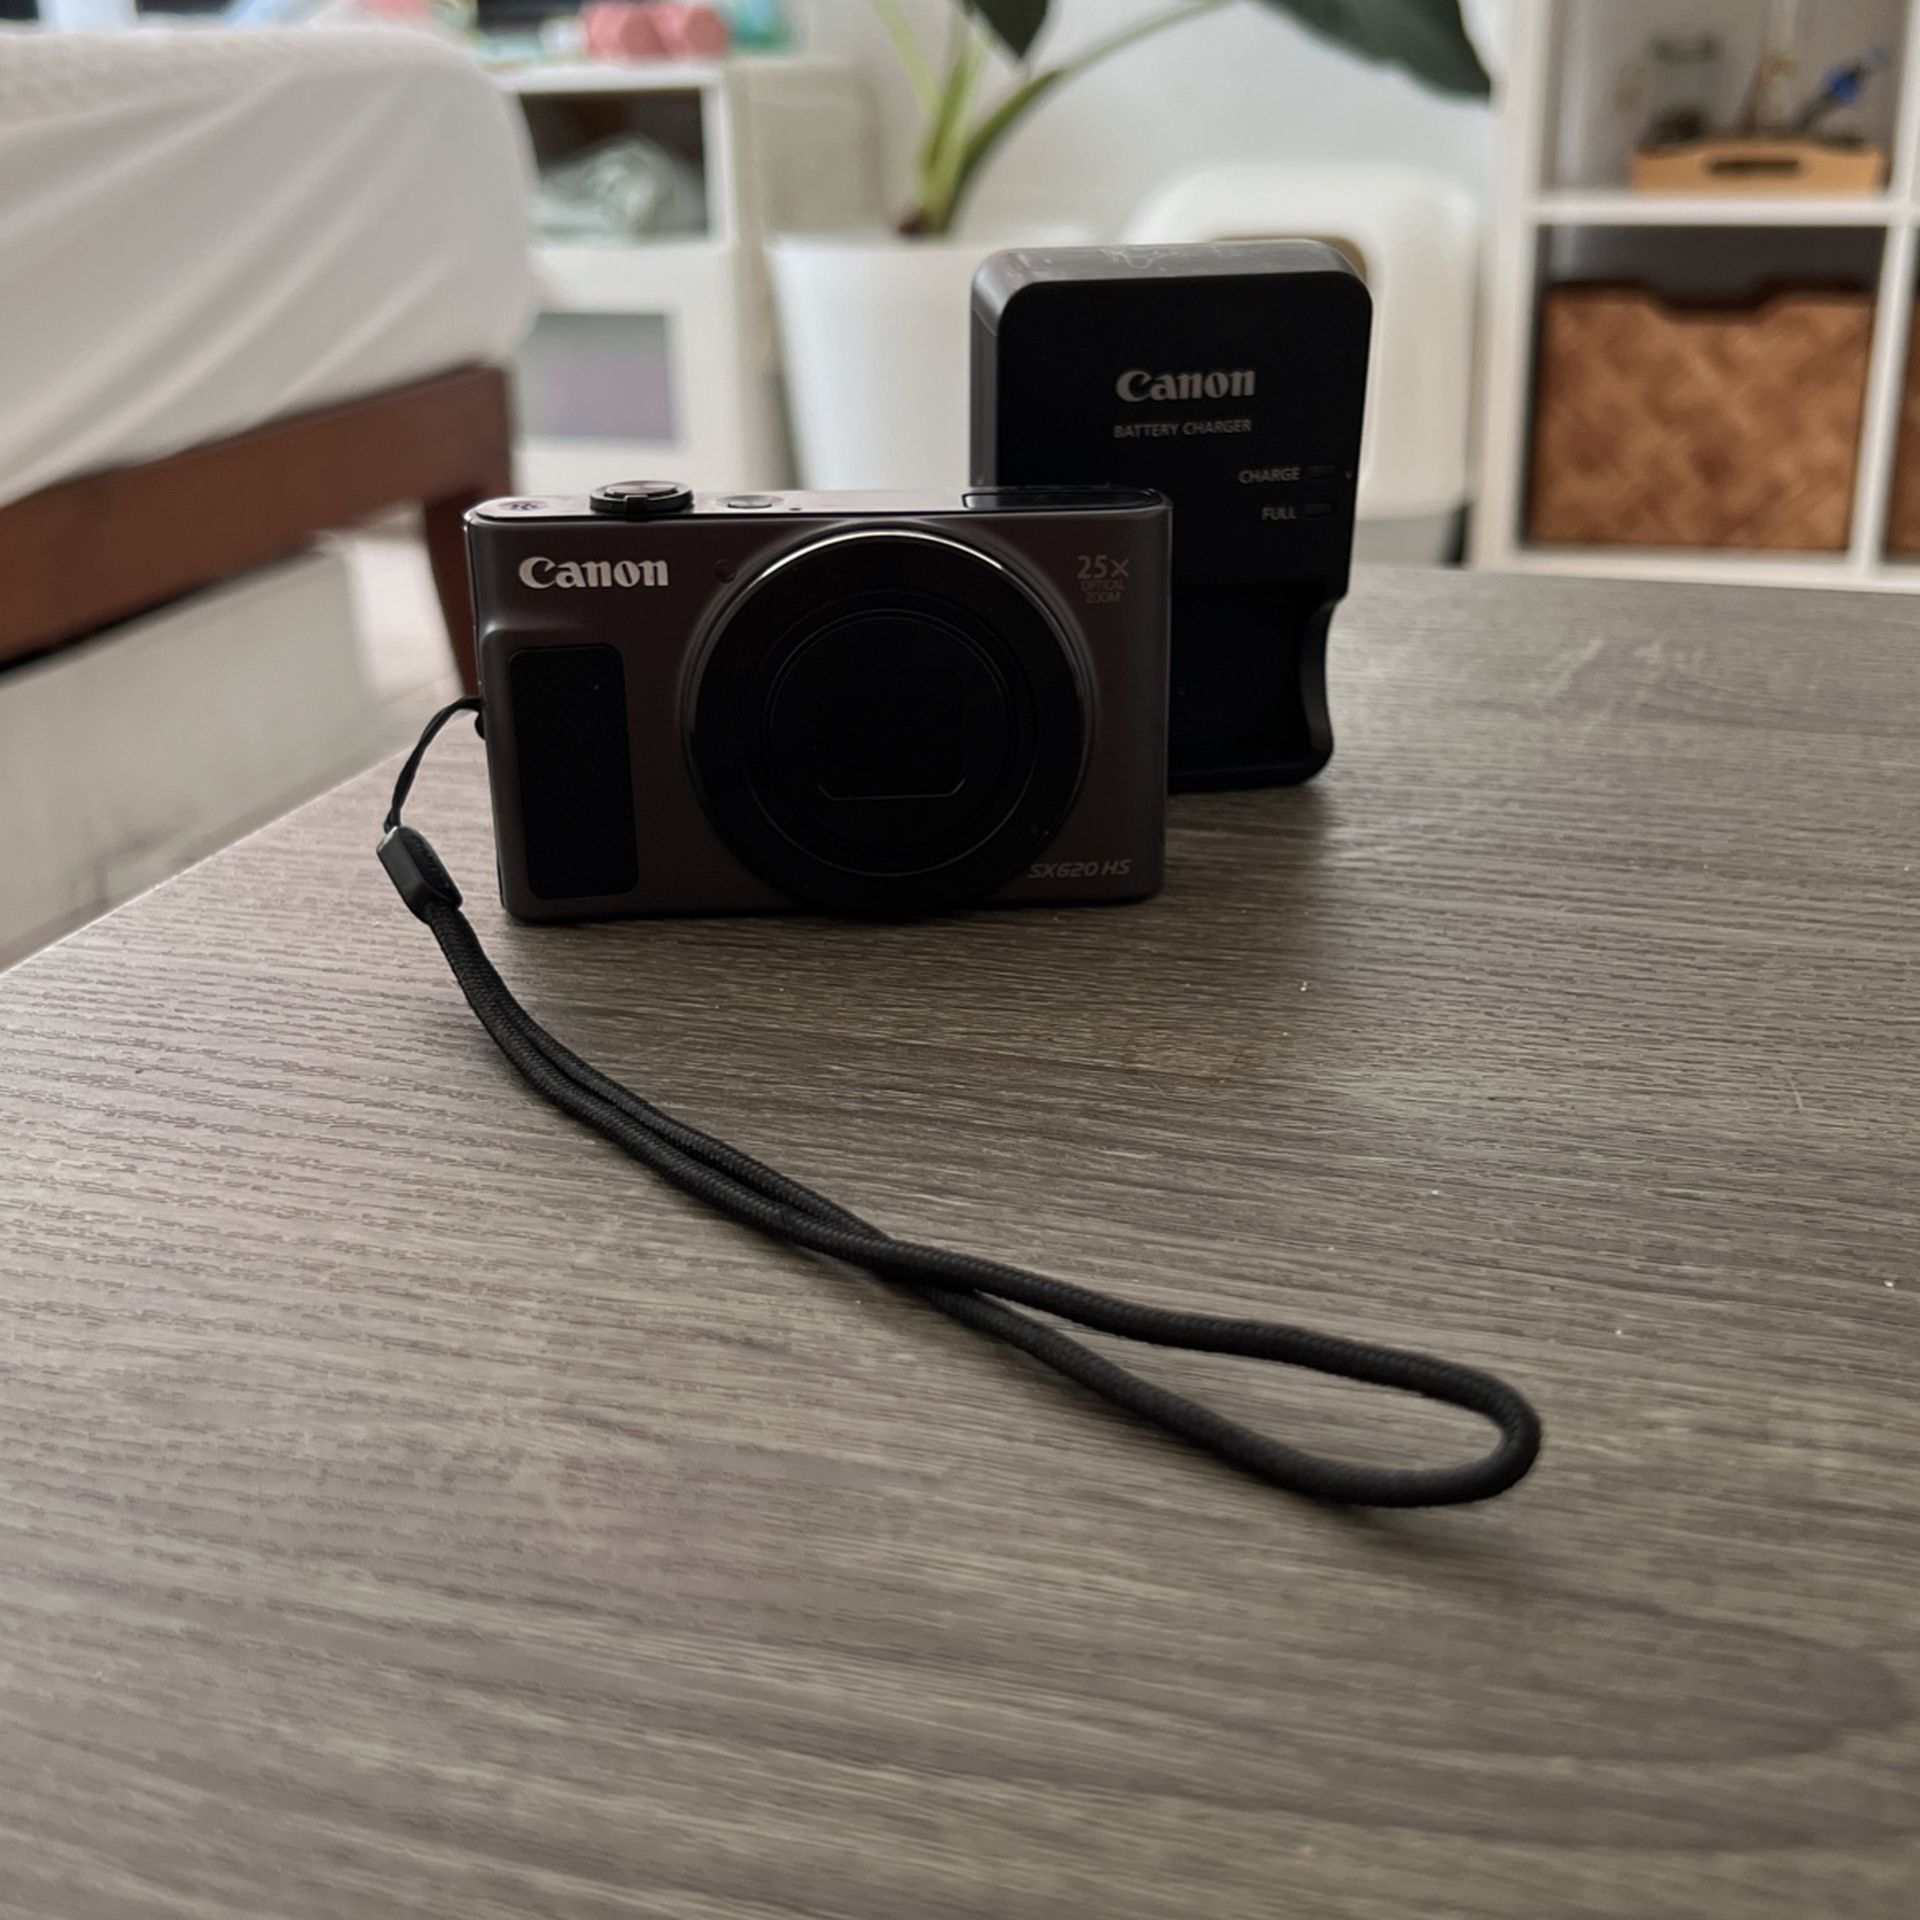 Canon SX620 HS Camera